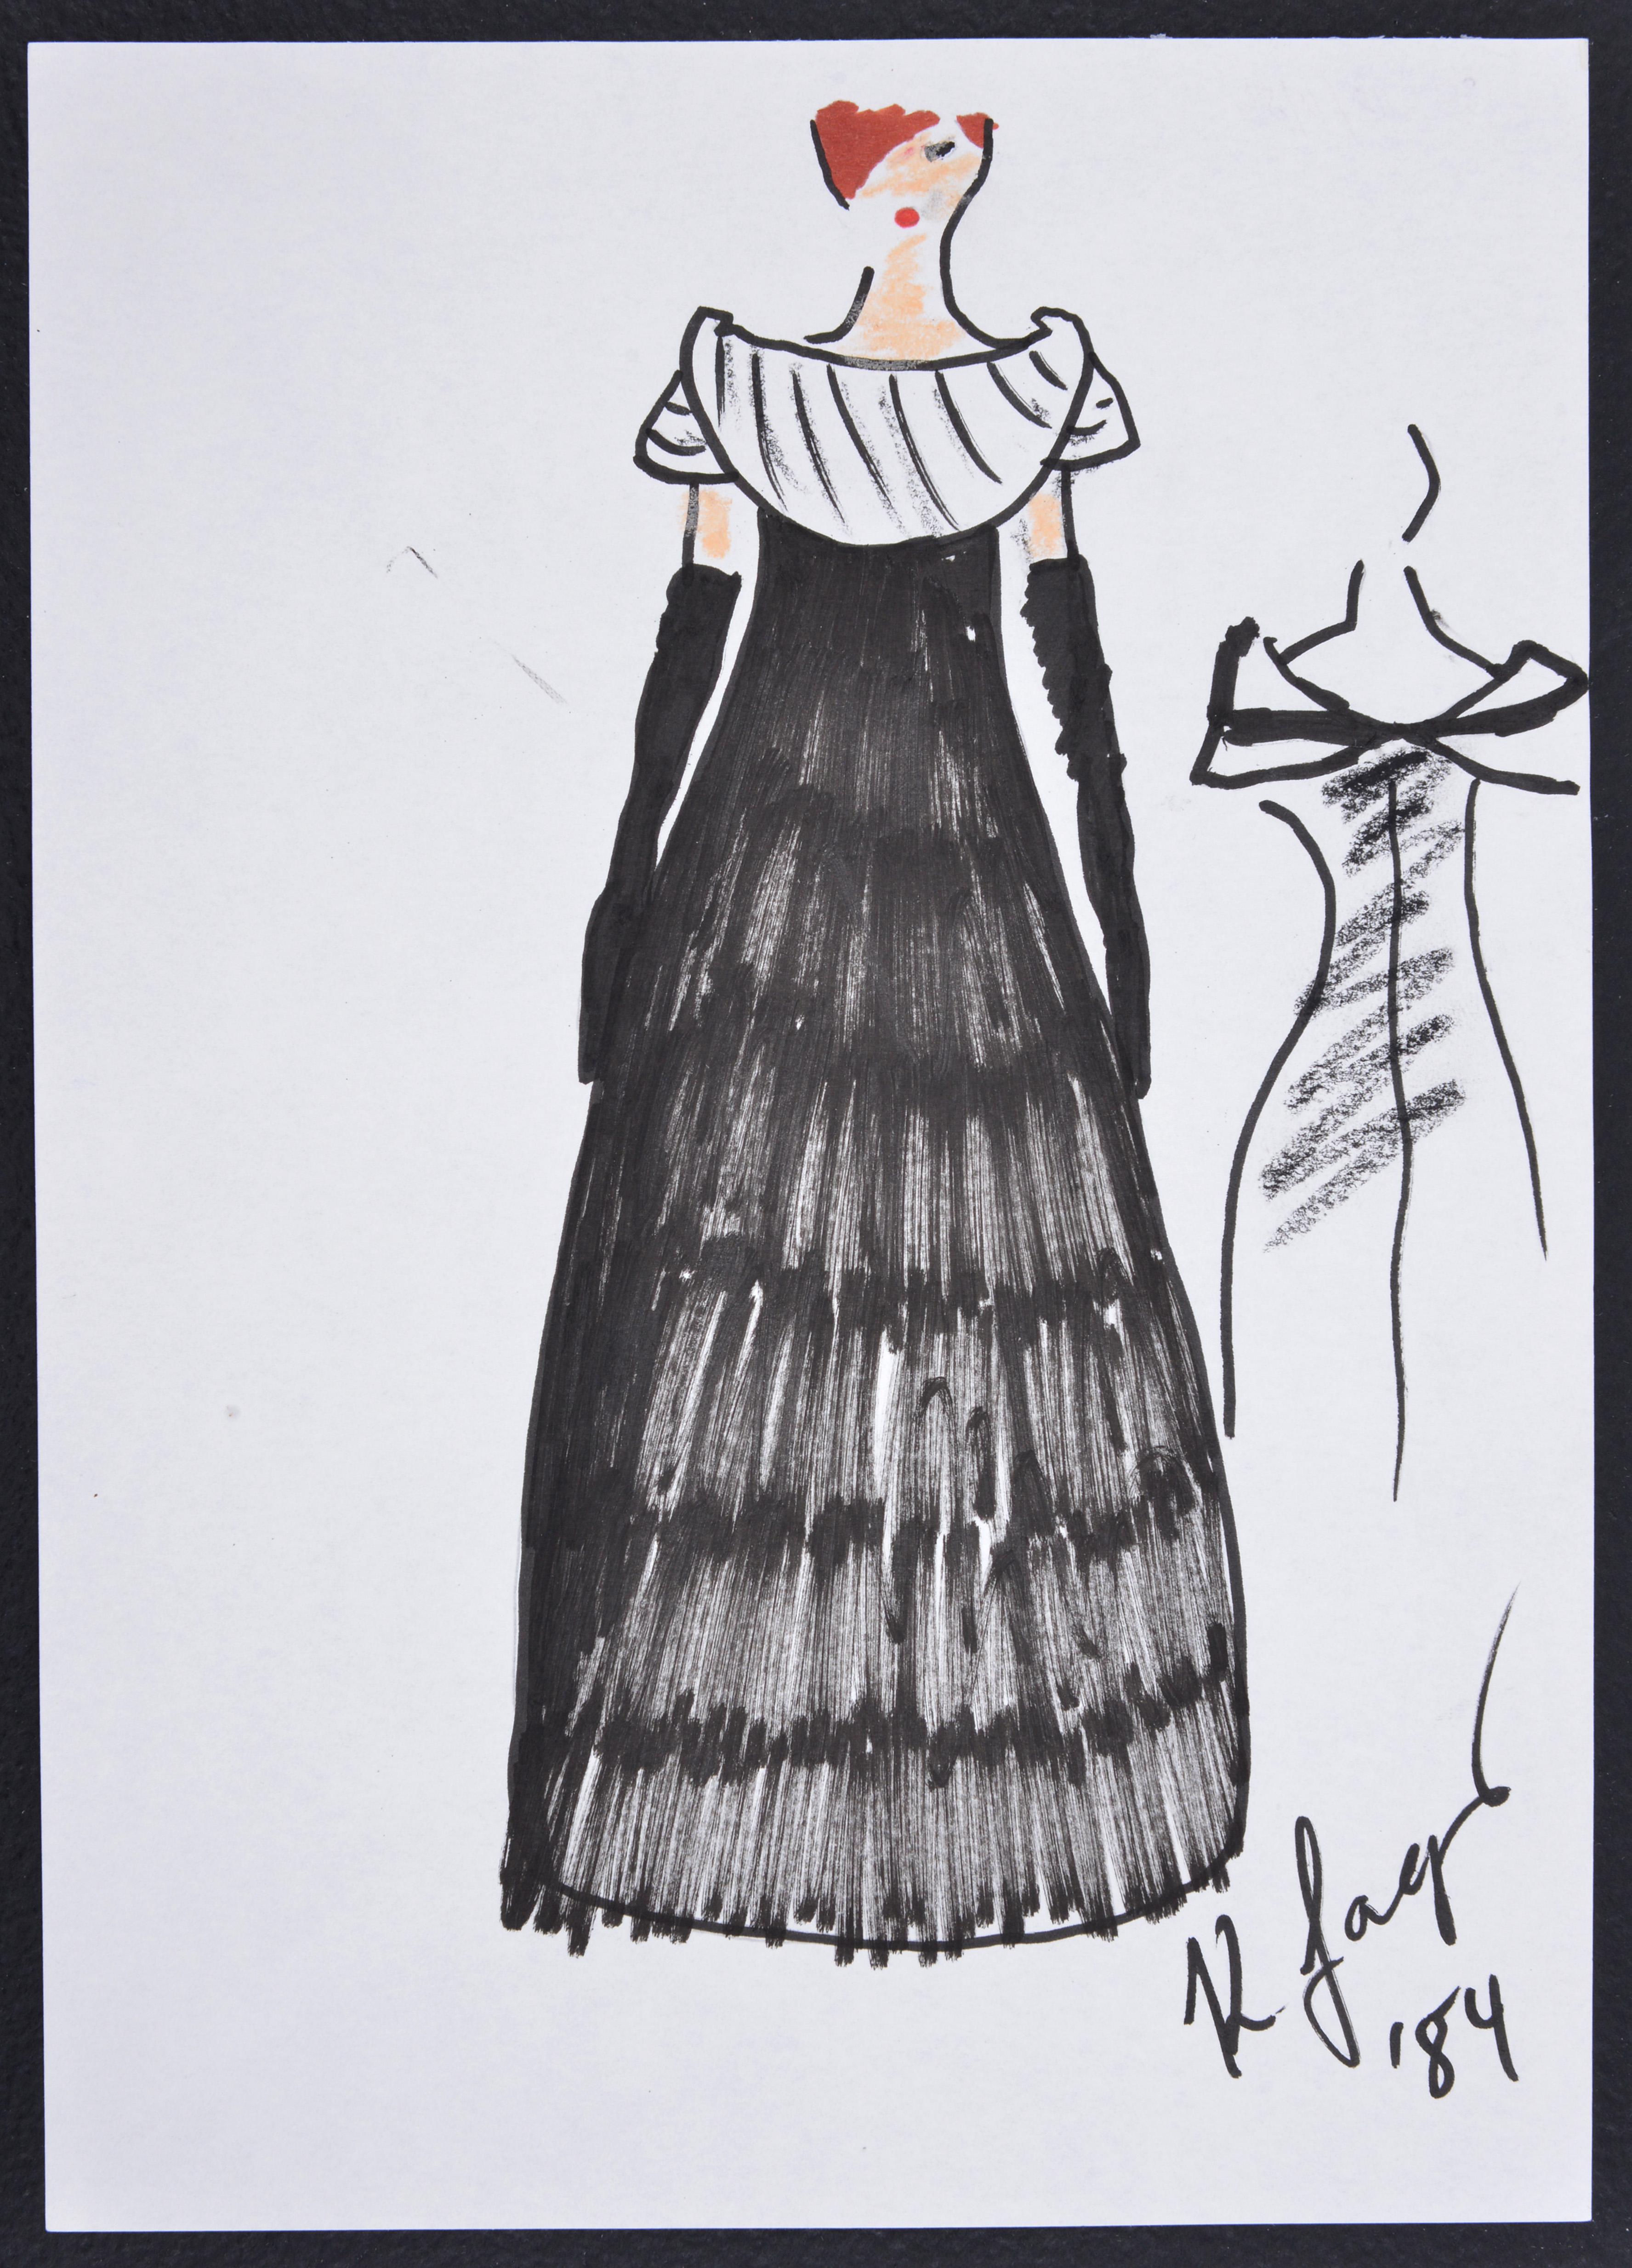 Künstler/Designer; Hersteller: Karl Lagerfeld (deutsch, 1933-2019)
Kennzeichnung(en); Anmerkungen: unterzeichnet, Kennzeichnung(en); 1984
MATERIALIEN: Mischtechnik (Tinte, Bleistift, andere) auf Papier
Abmessungen (H, B, T): 11,5 